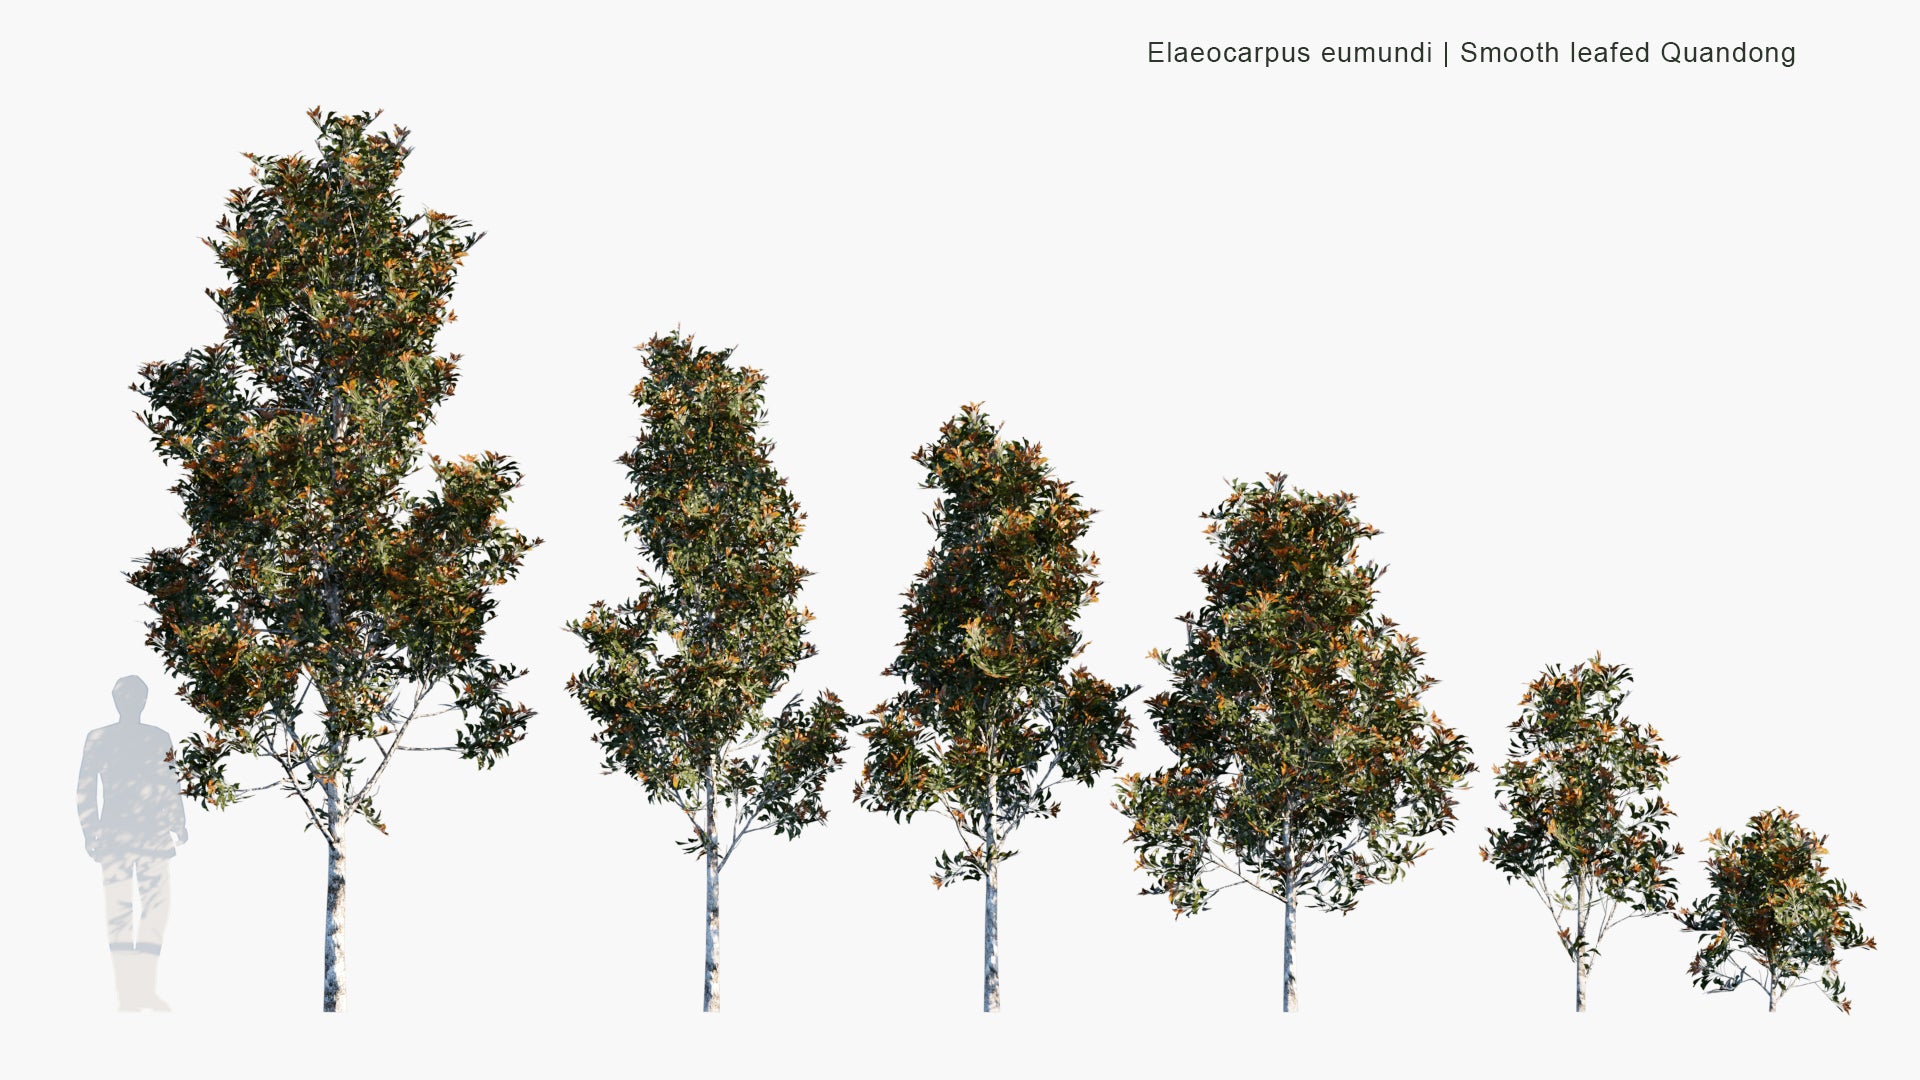 Low Poly Elaeocarpus Eumundi - Eumundi Quandong, Smooth Leafed Quandong (3D Model)